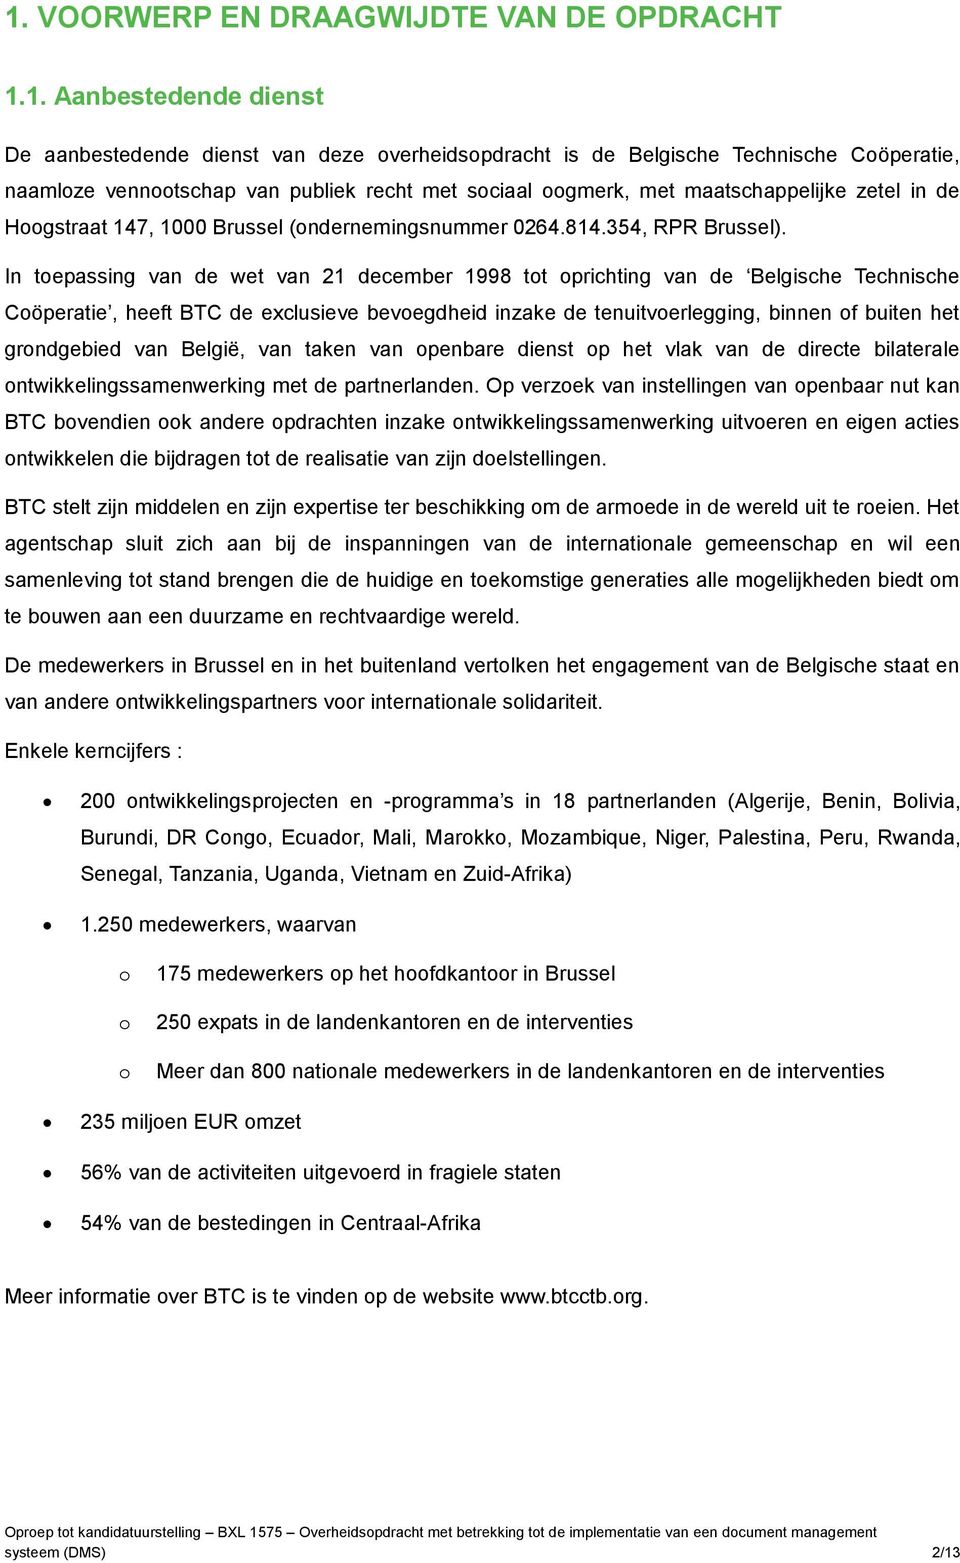 In tepassing van de wet van 21 december 1998 tt prichting van de Belgische Technische Cöperatie, heeft BTC de exclusieve bevegdheid inzake de tenuitverlegging, binnen f buiten het grndgebied van